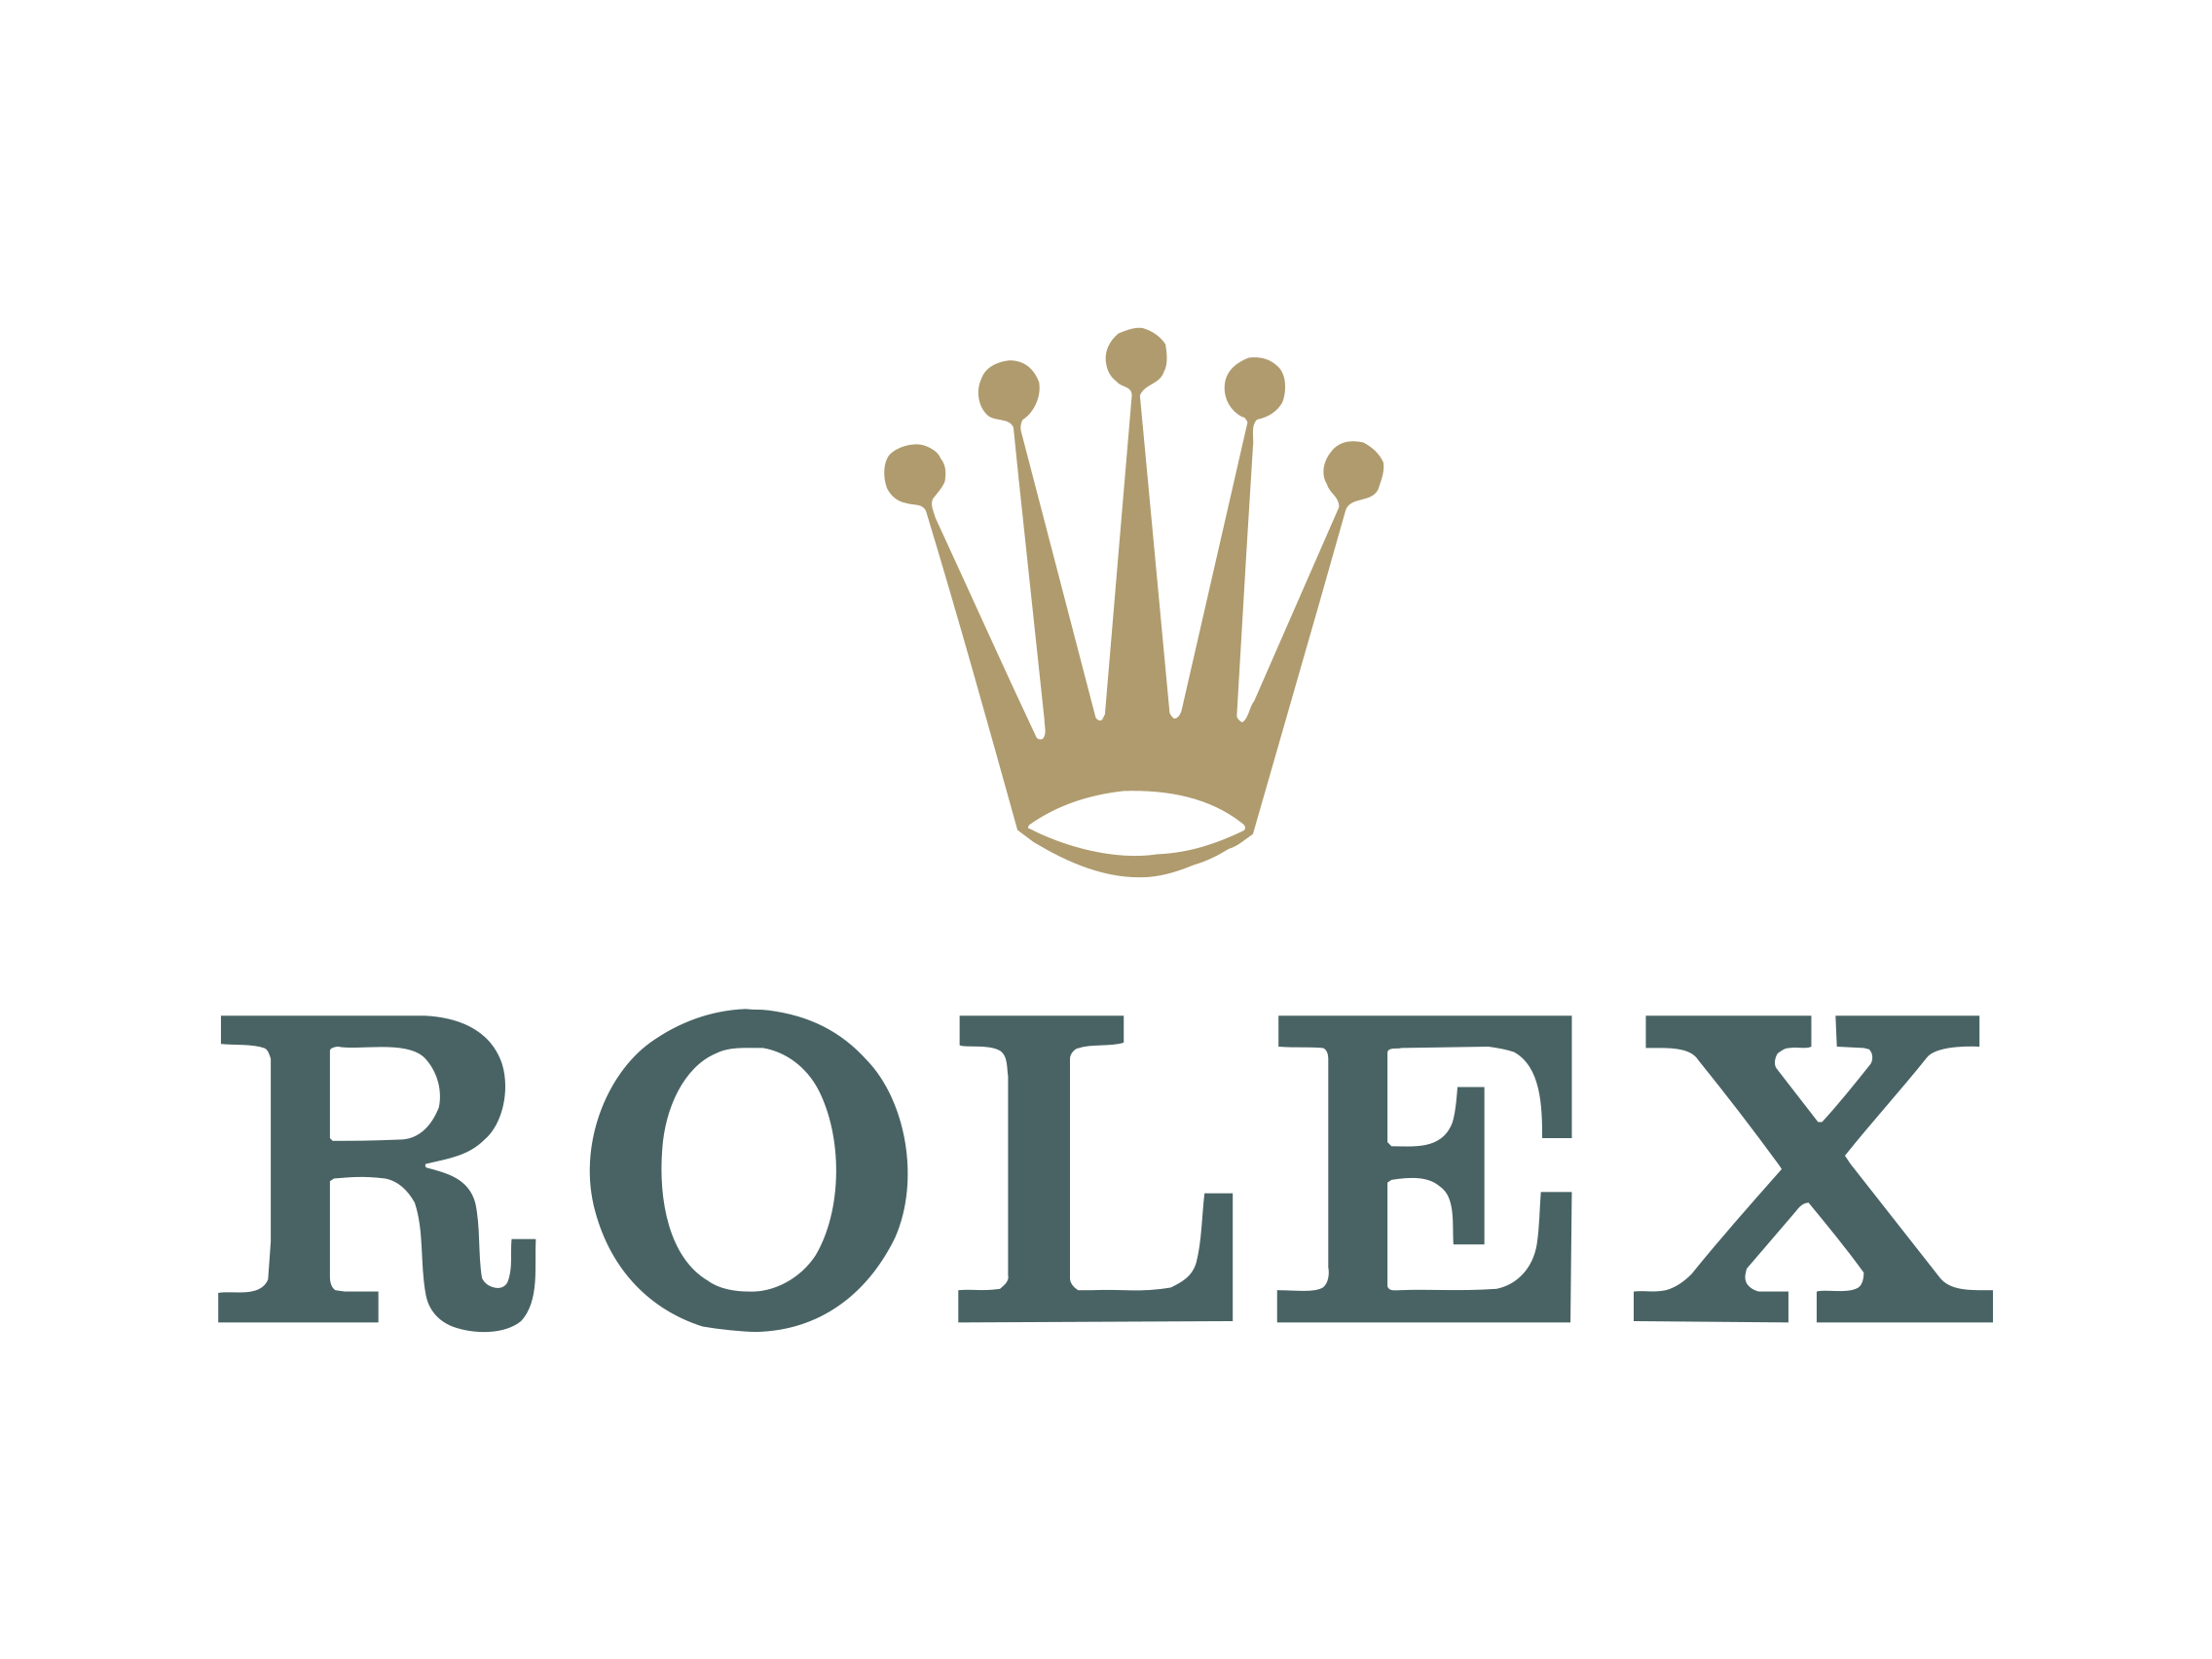 The rolex logo with a modern twist on Craiyon